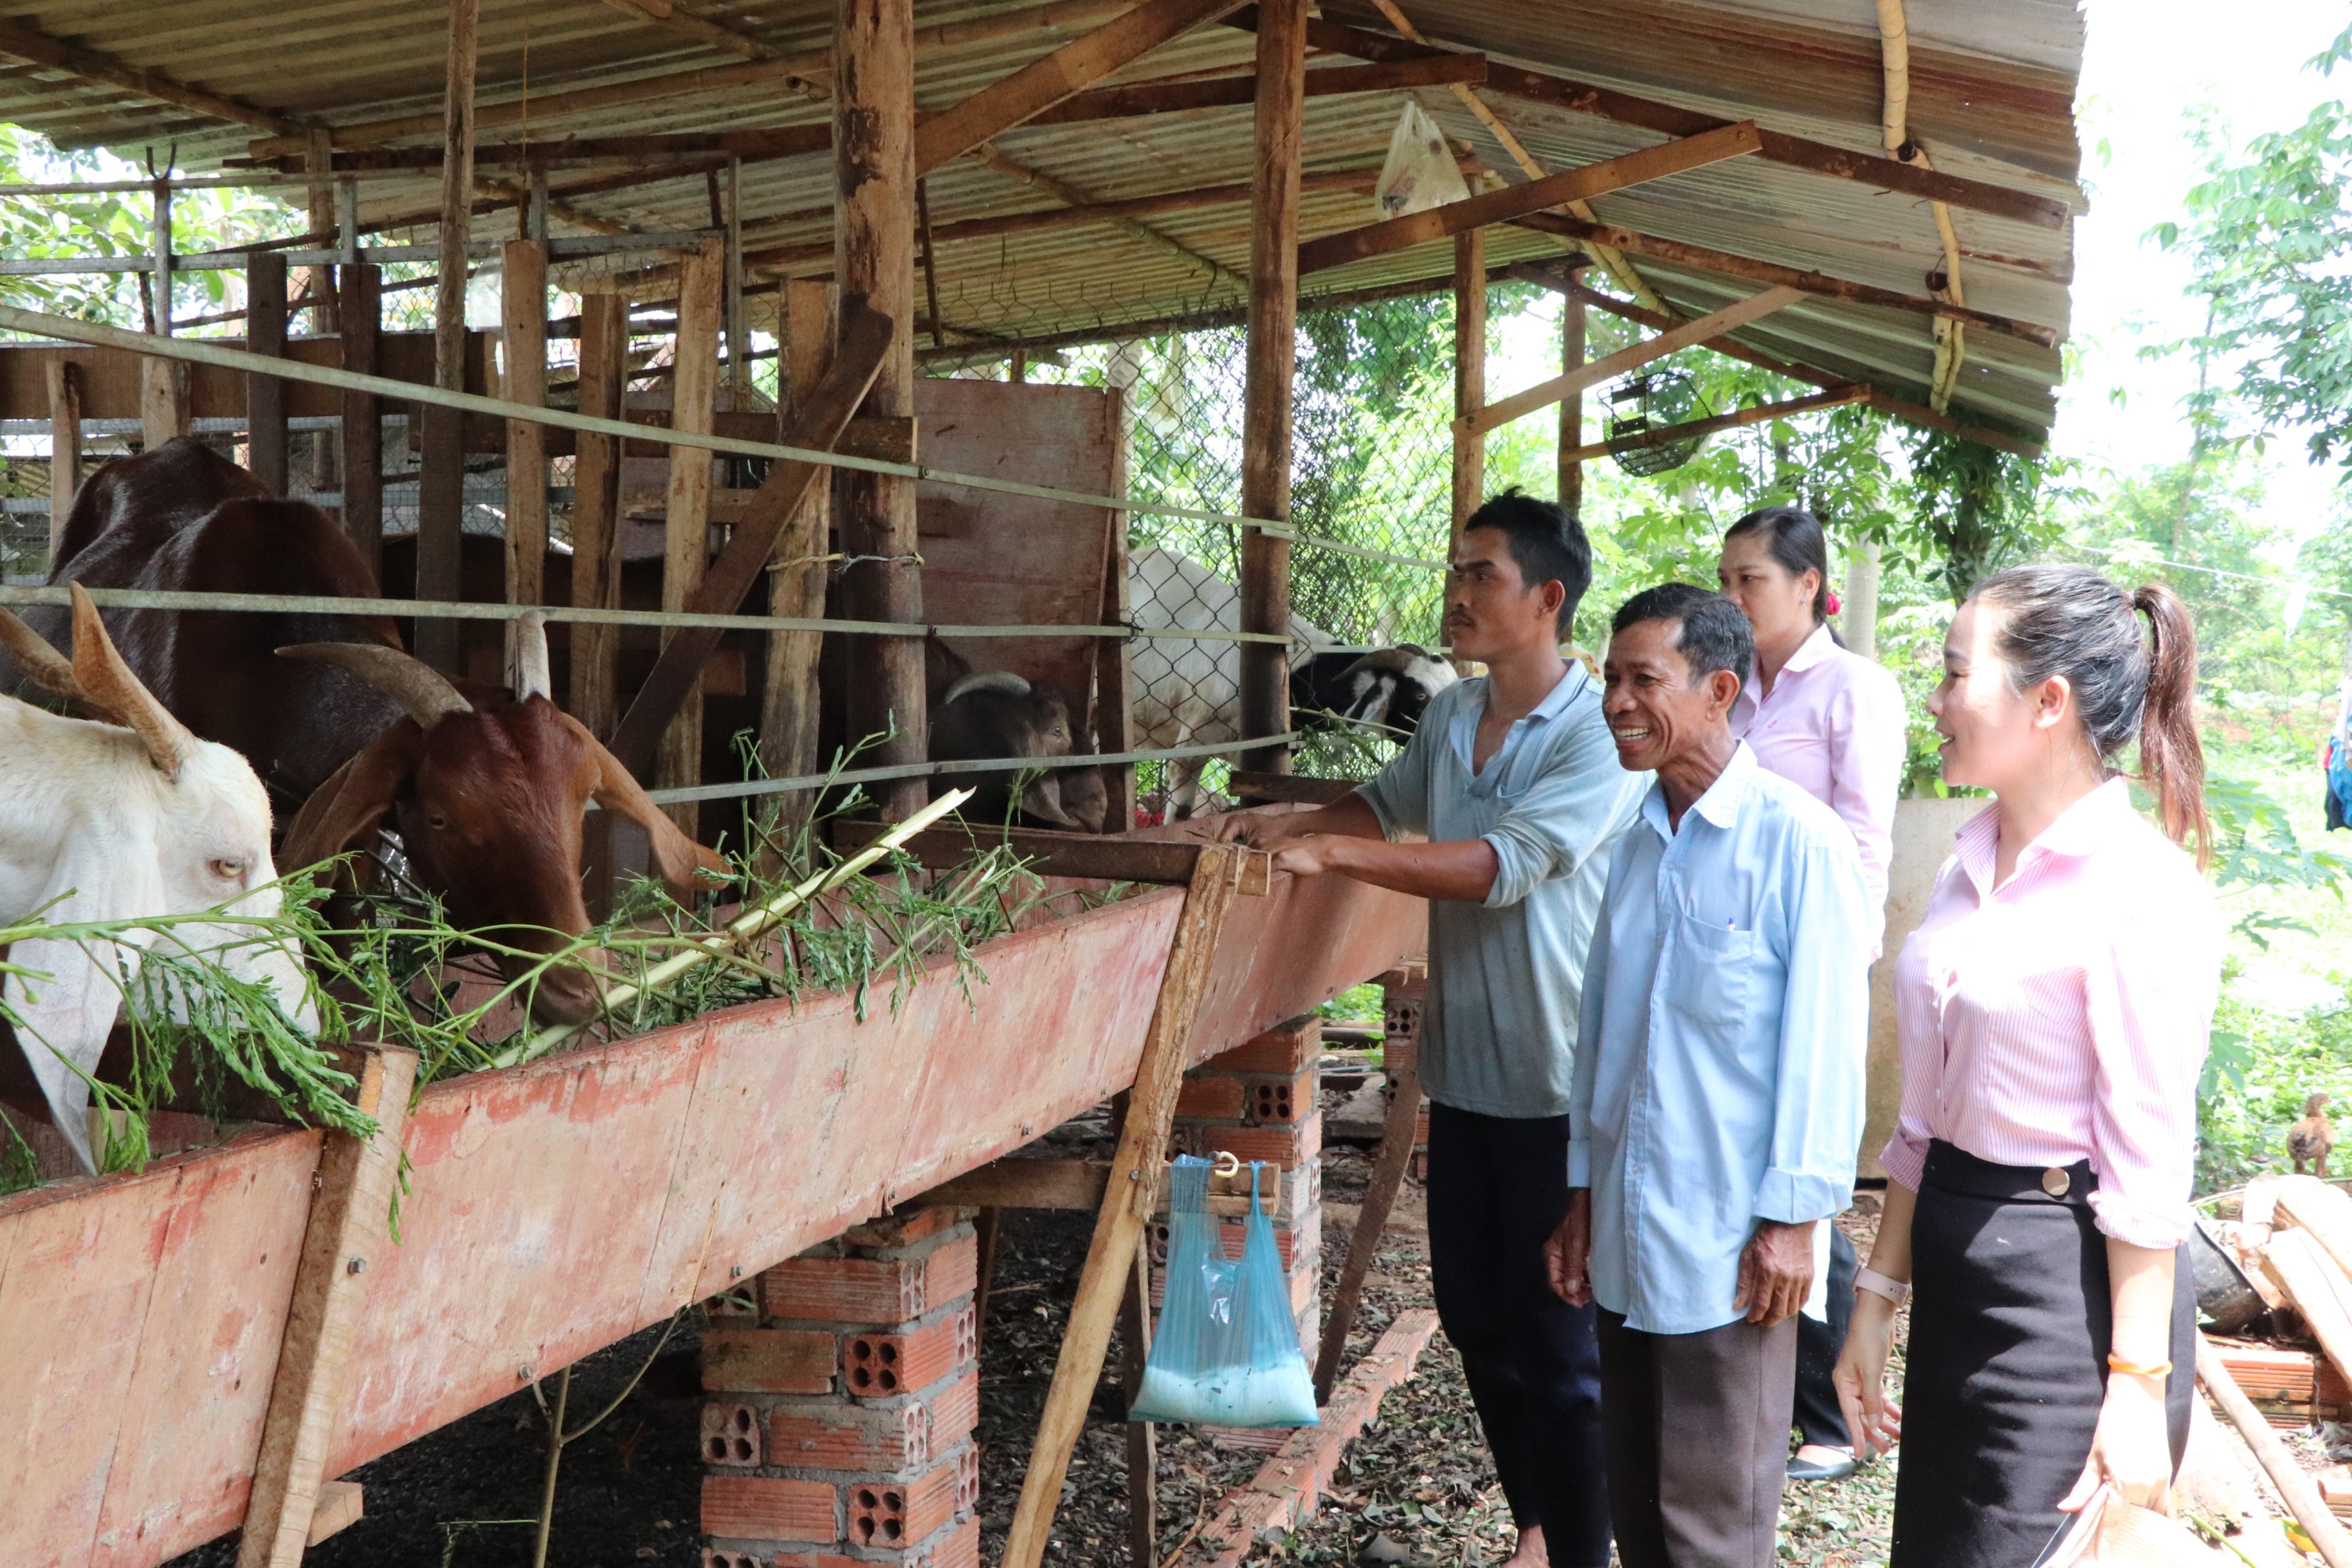 Nhờ được hỗ trợ vốn từ Ngân hàng Chính sách xã hội, gia đình ông Đào Văn Hoàng, ở thôn Lồ Ồ, xã Đá Bạc, huyện Châu Đức có thu nhập gần 100 triệu đồng từ chăn nuôi bò sinh sản và nuôi dê.